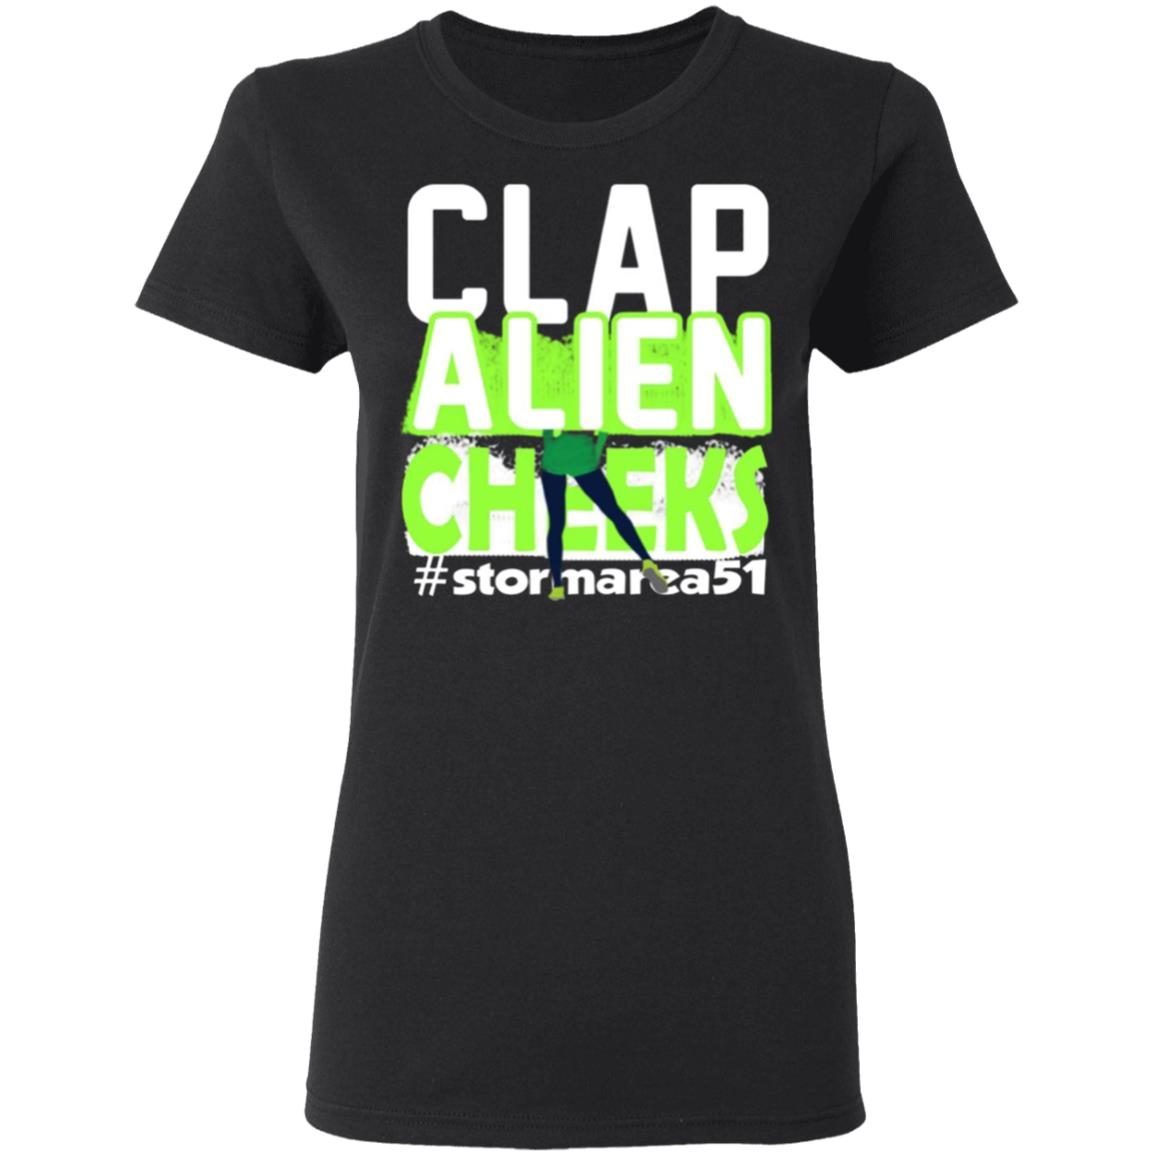 Clap Alien Cheeks Storm Area 51